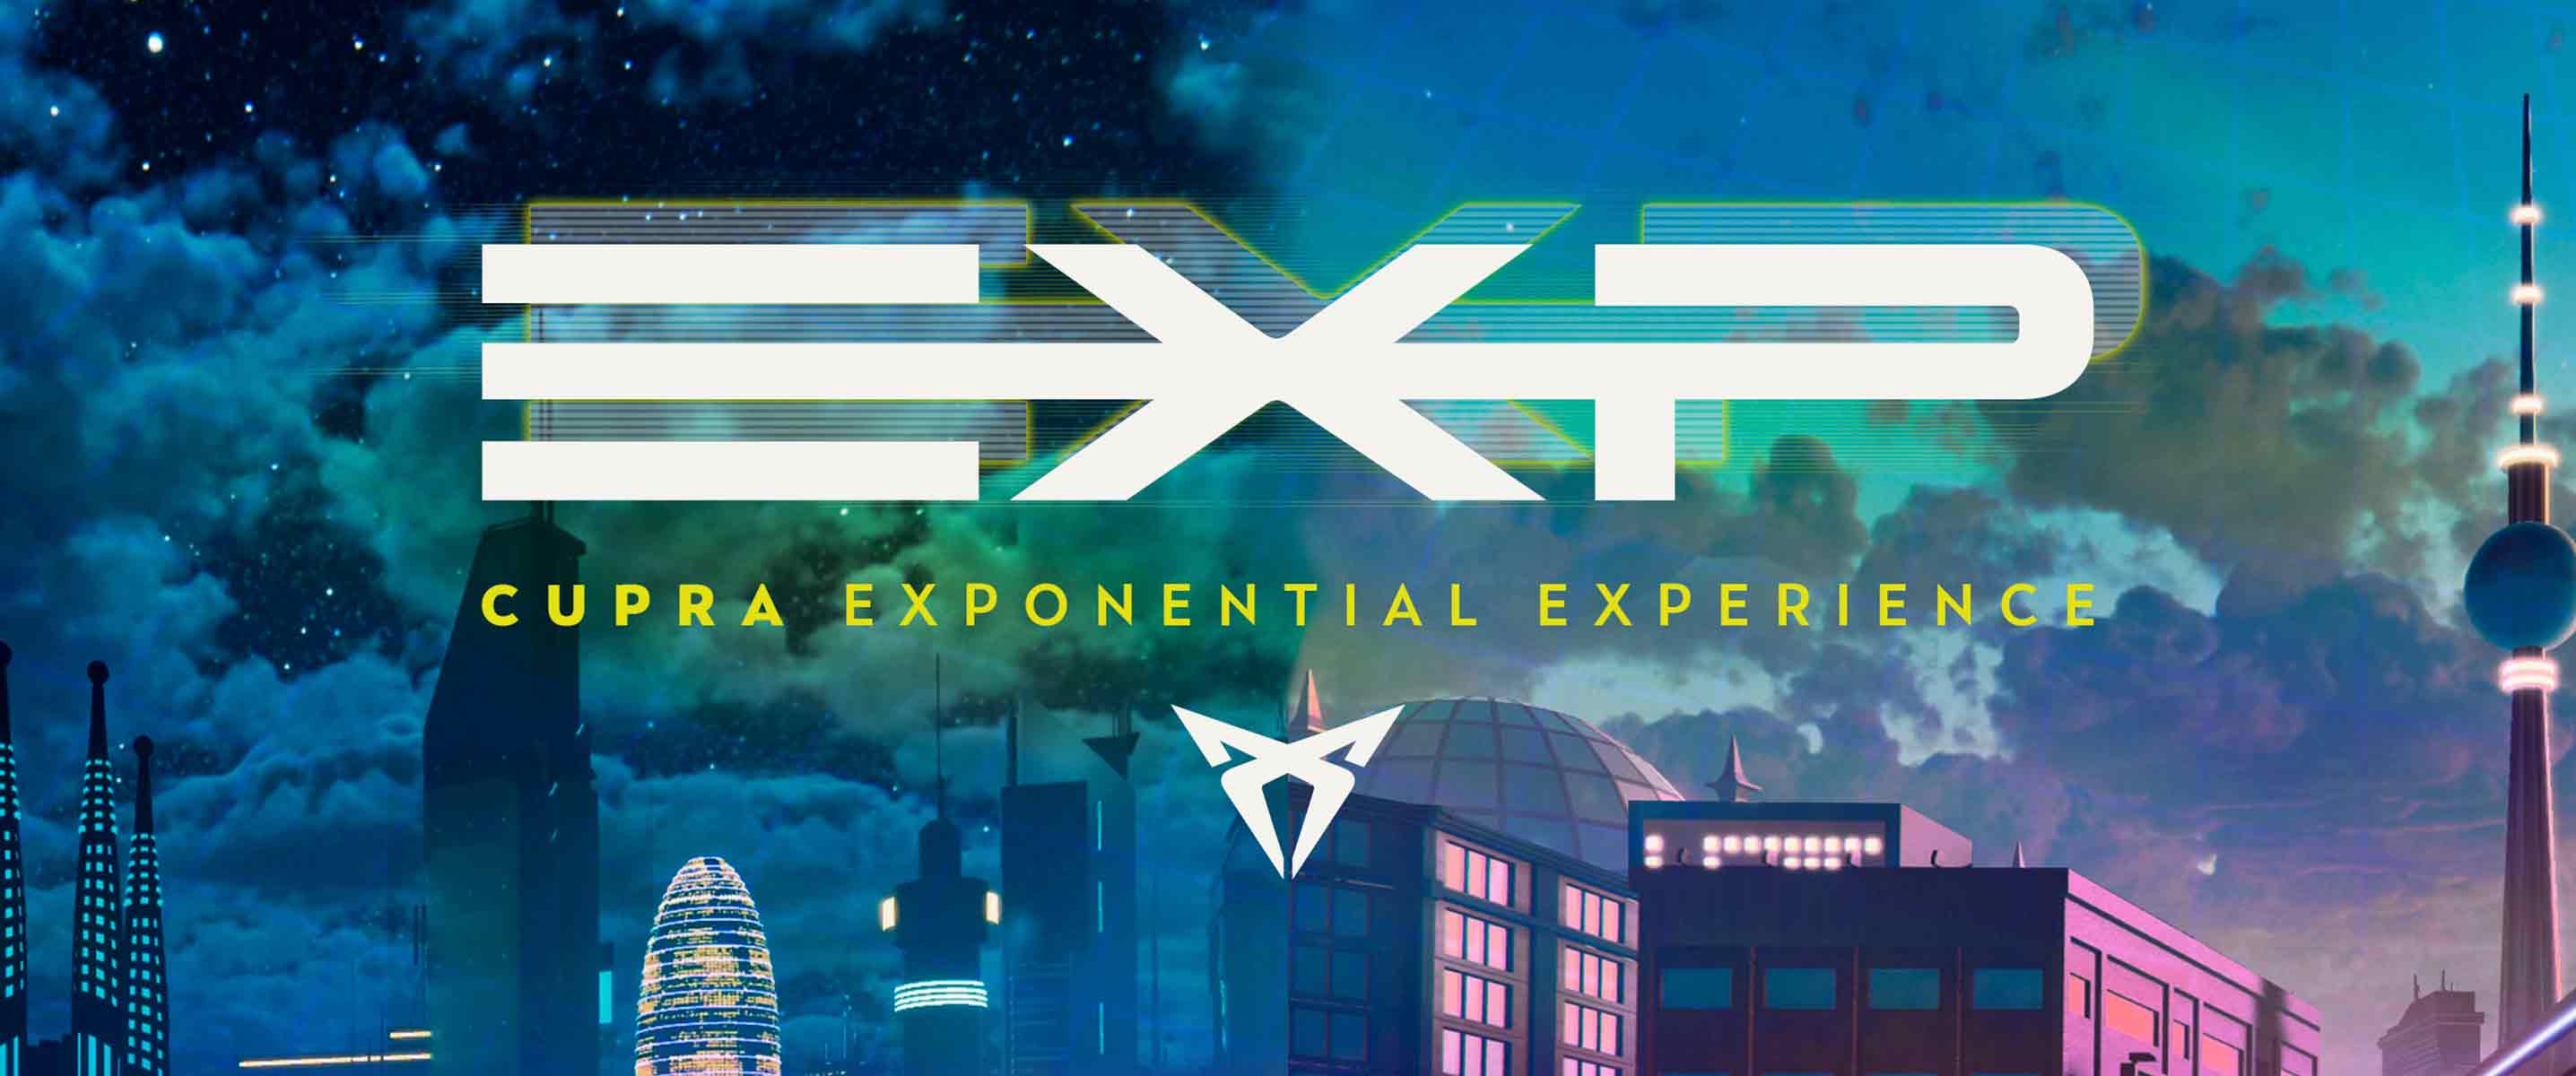 CUPRA presenta Exponential Experience